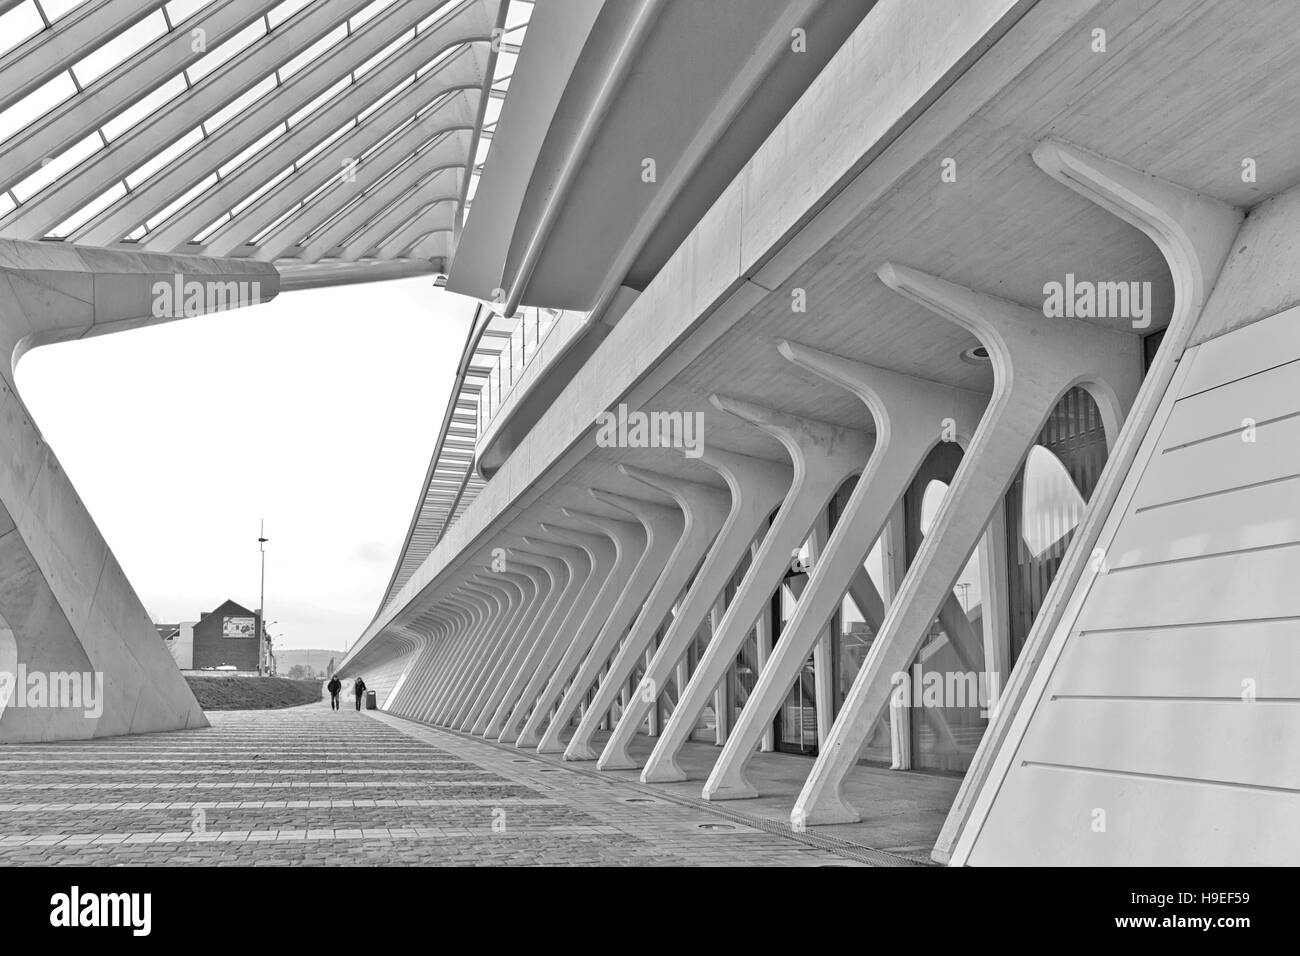 Liegi, Belgio - Dicembre 2014: vista sul livello di massa nel Liege-Guillemins stazione ferroviaria, progettato da Santiago Calatrava. Bianco e nero fotogr Foto Stock